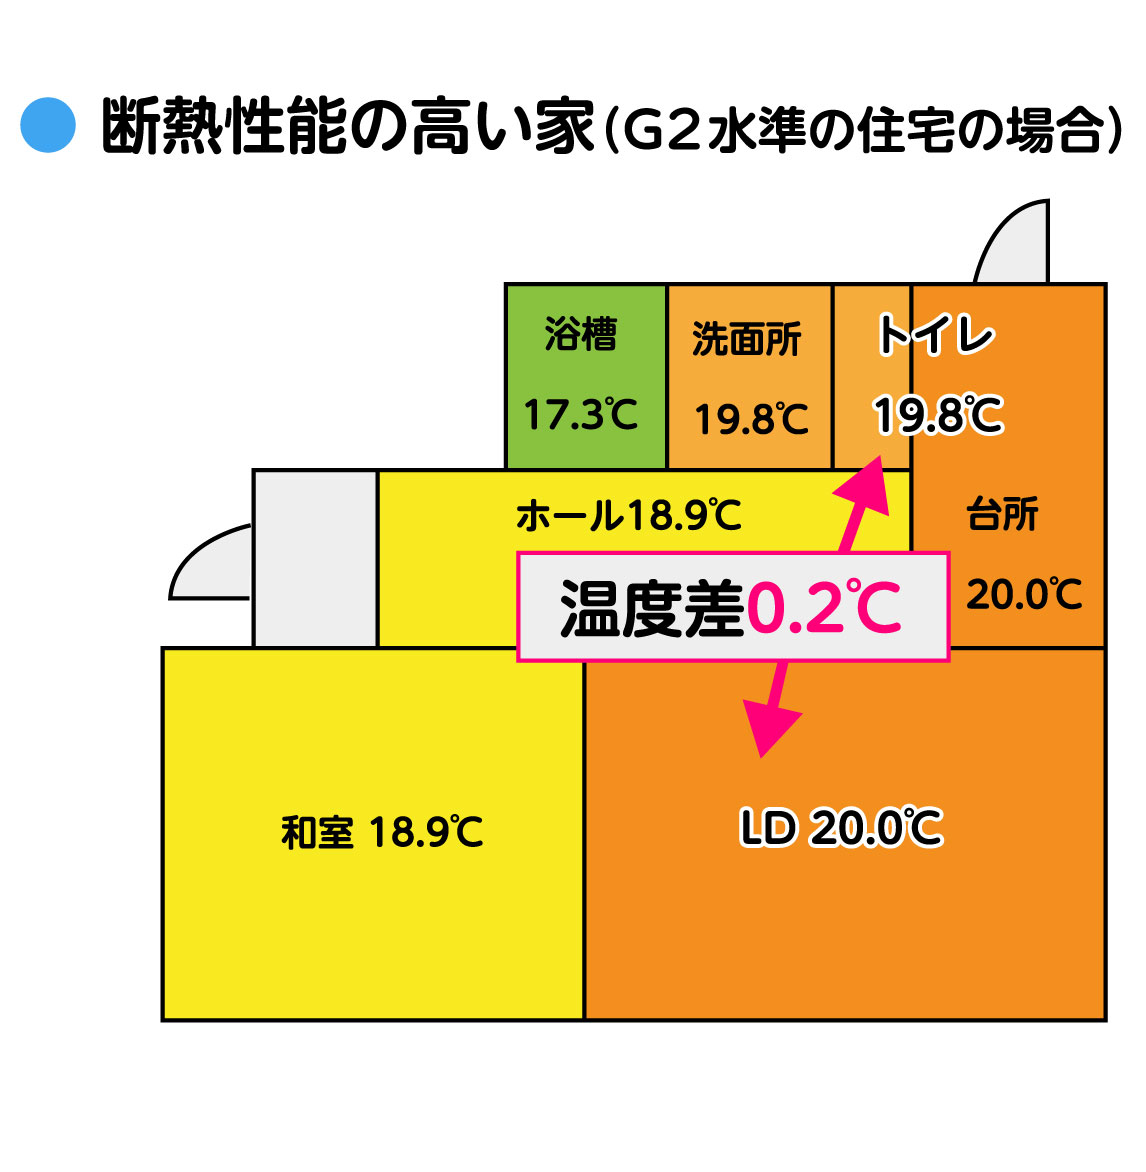 断熱性能の高い家(G1水準の住宅の場合) イメージ図